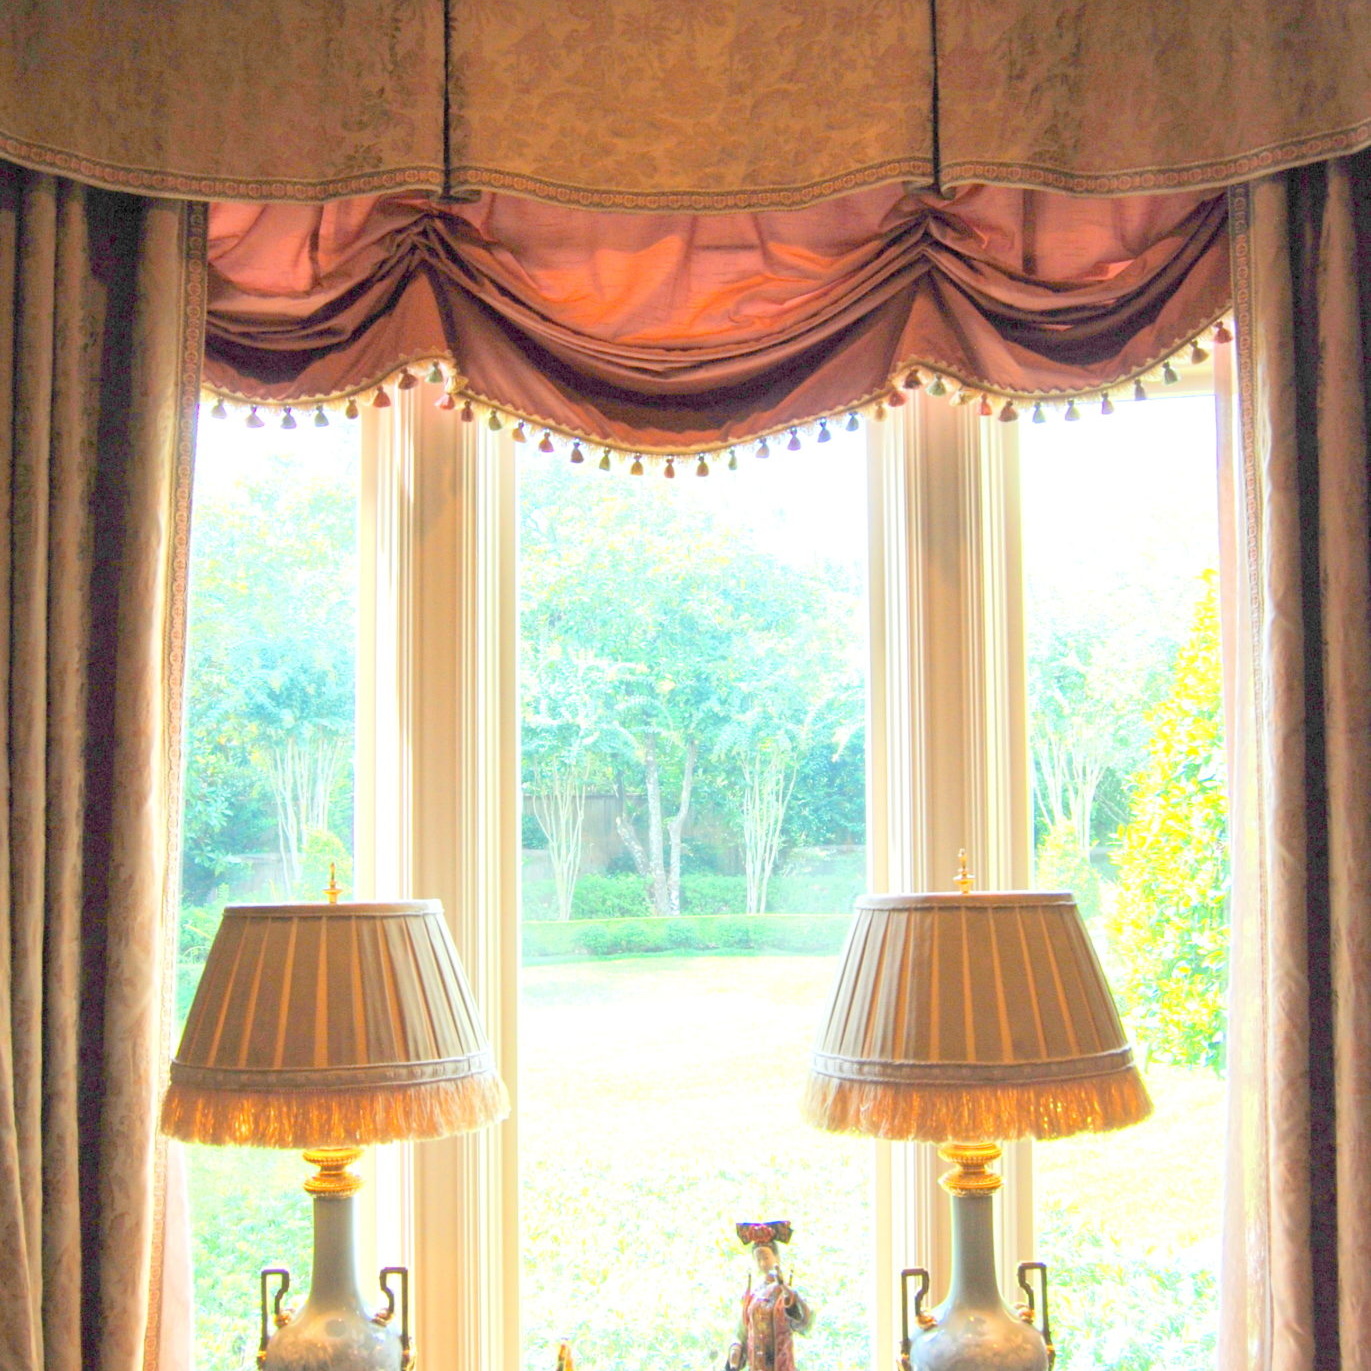 Interior design near a bright open window